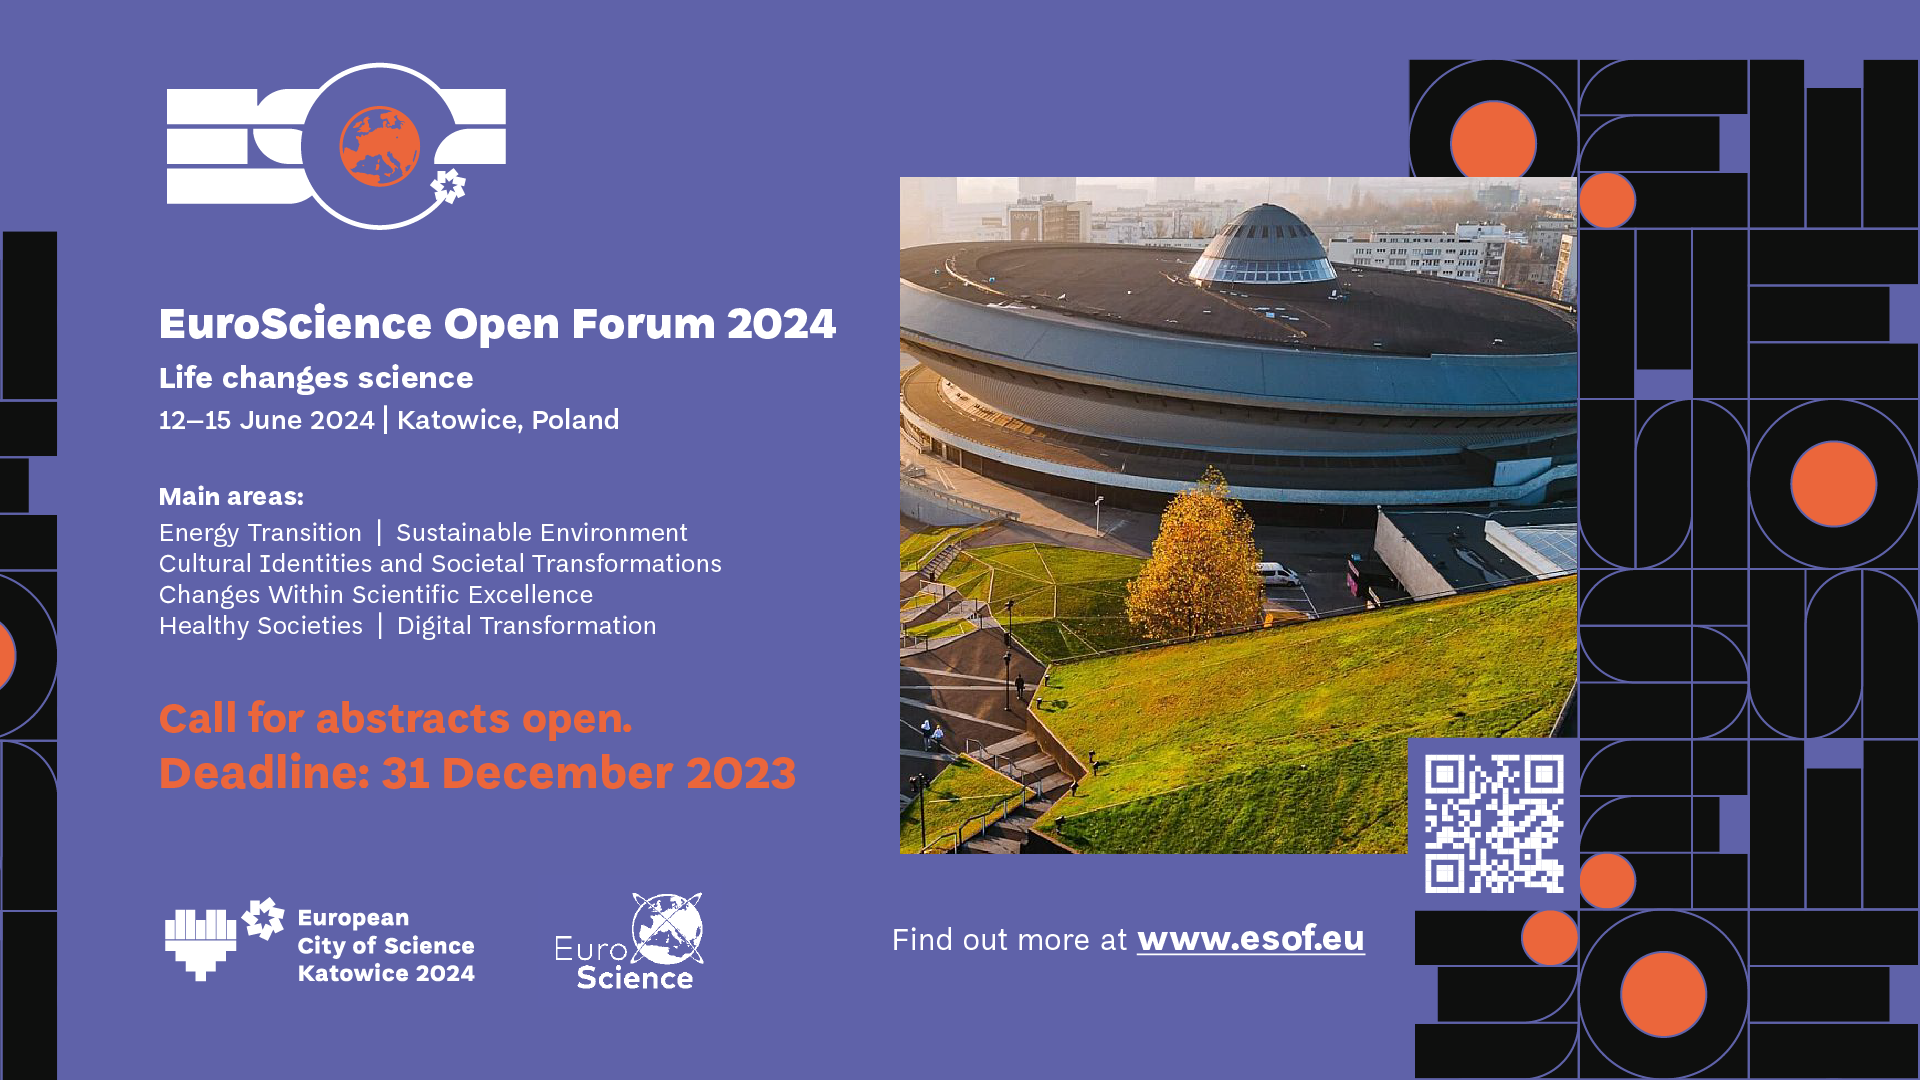 Plakat promujący konferencję EuroScience Open Forum 2024 w Katowicach, zdjęcie areny spodek w Katowicach